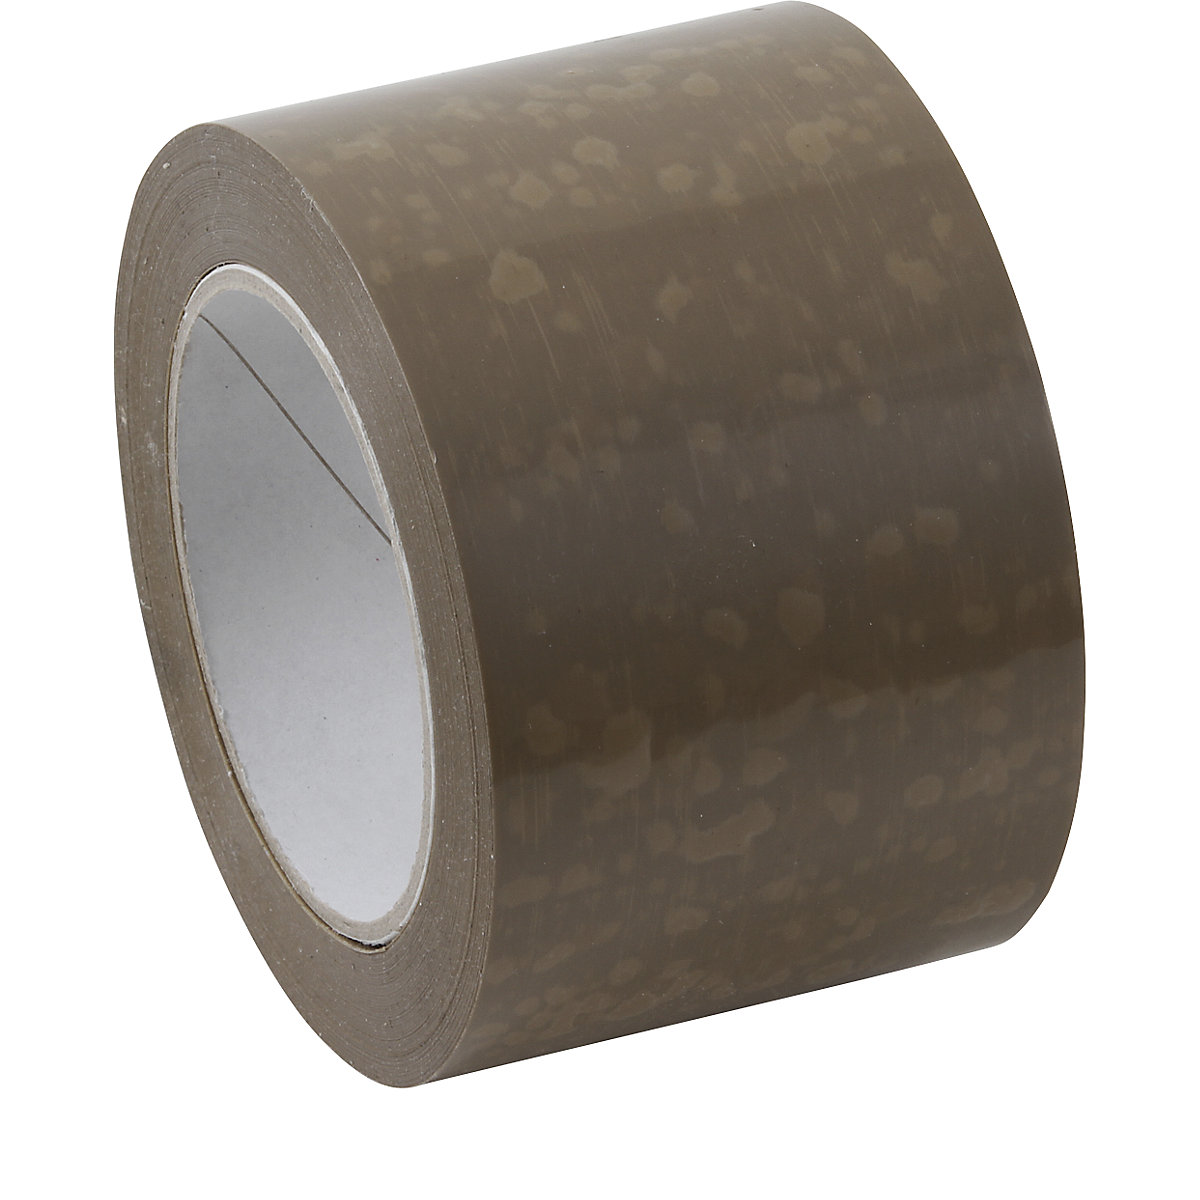 Cinta de embalaje de PVC, modelo extrafuerte, UE 24 rollos, marrón, anchura de cinta 75 mm-2